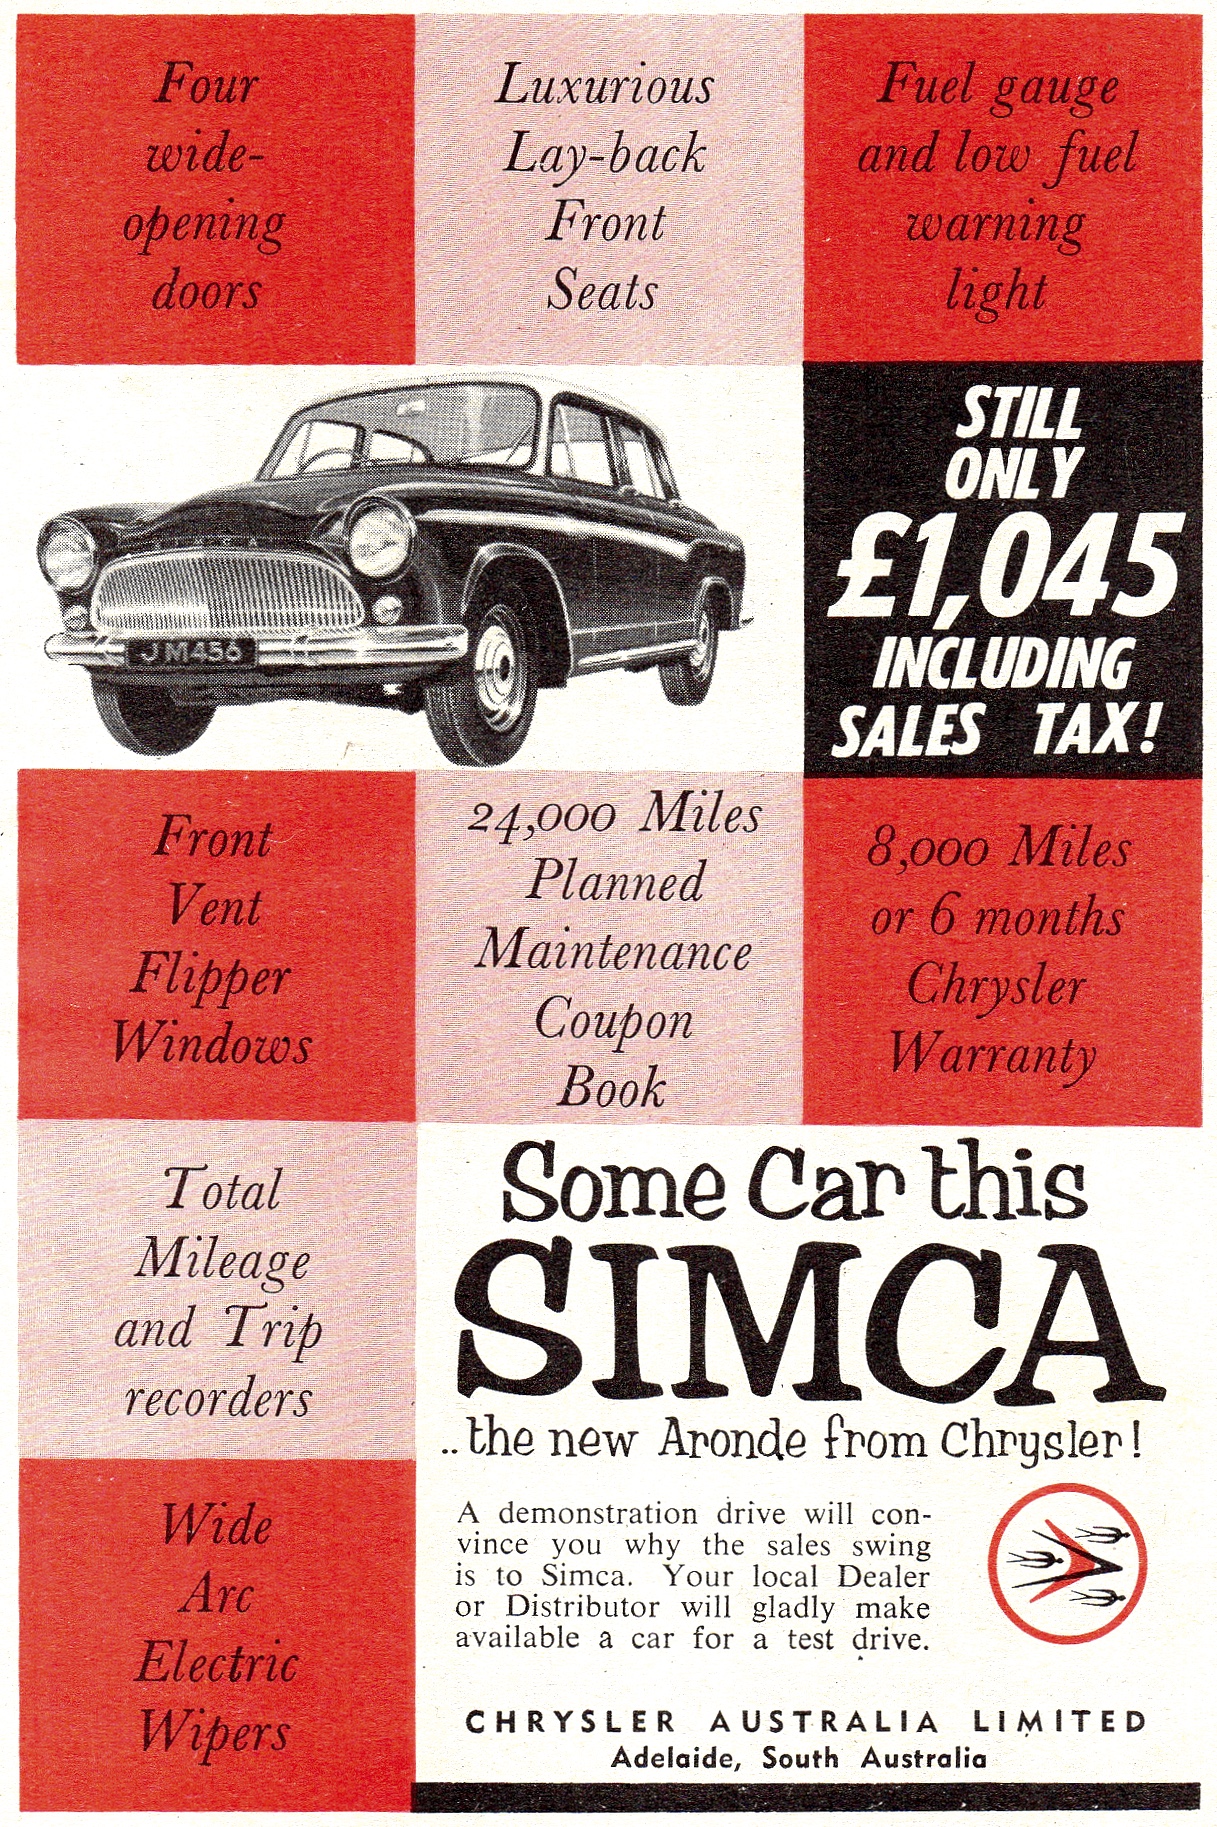 1960 Chrysler Simca Aronde Sedan Page 2.jpg